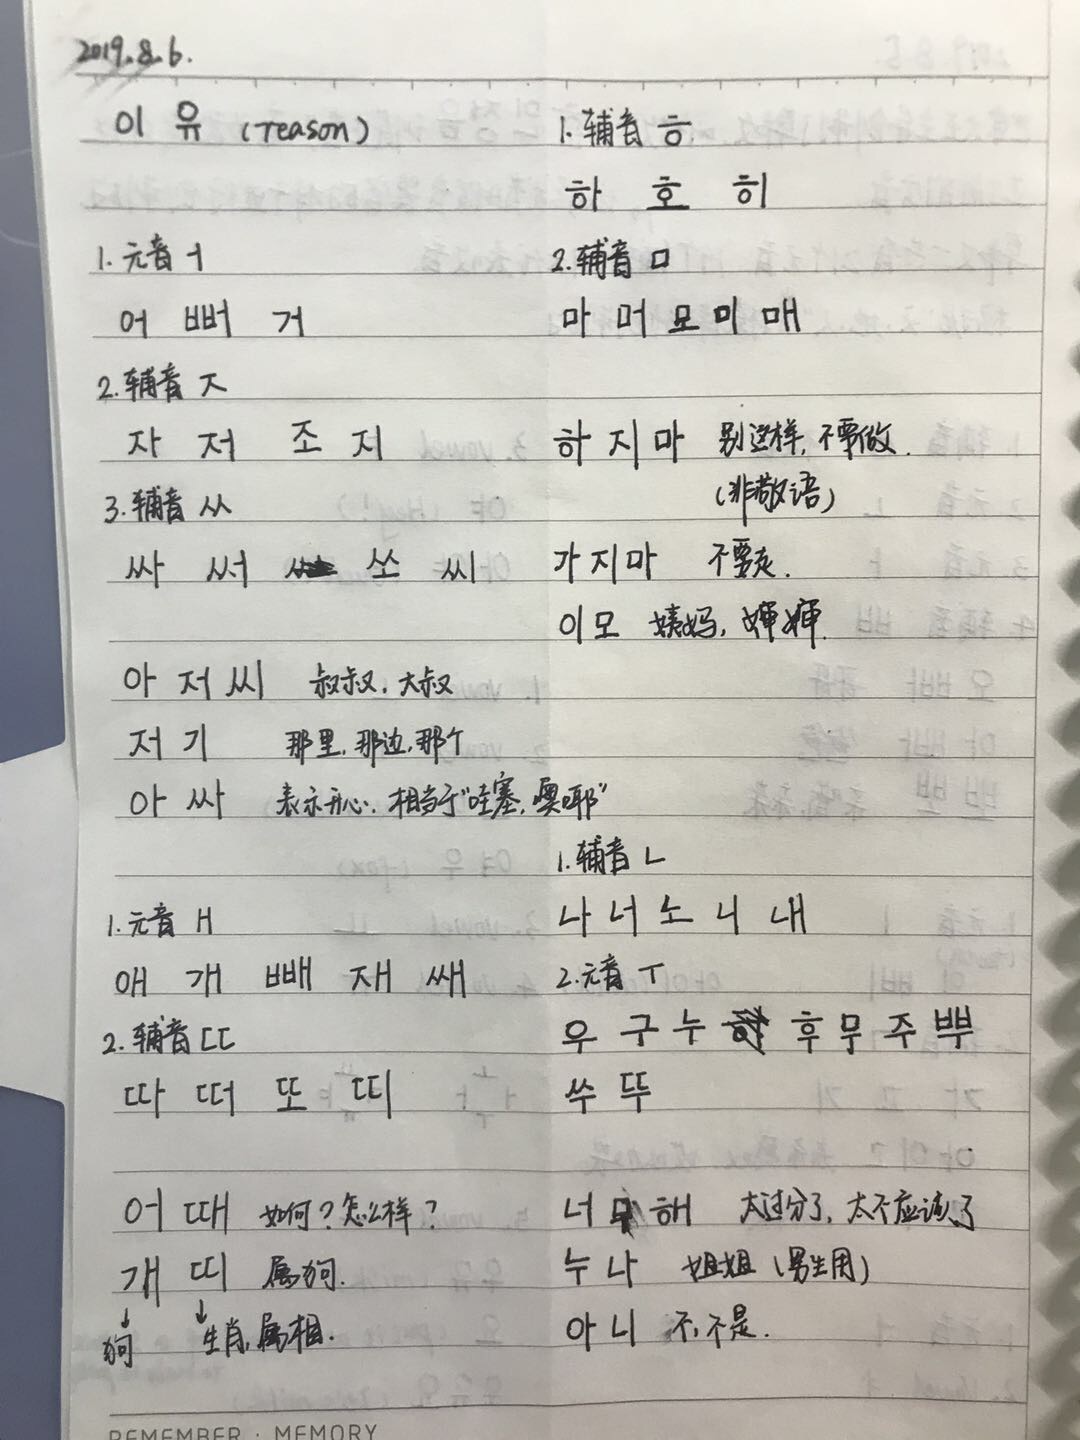 【学习笔记】1学习韩语第二天 2